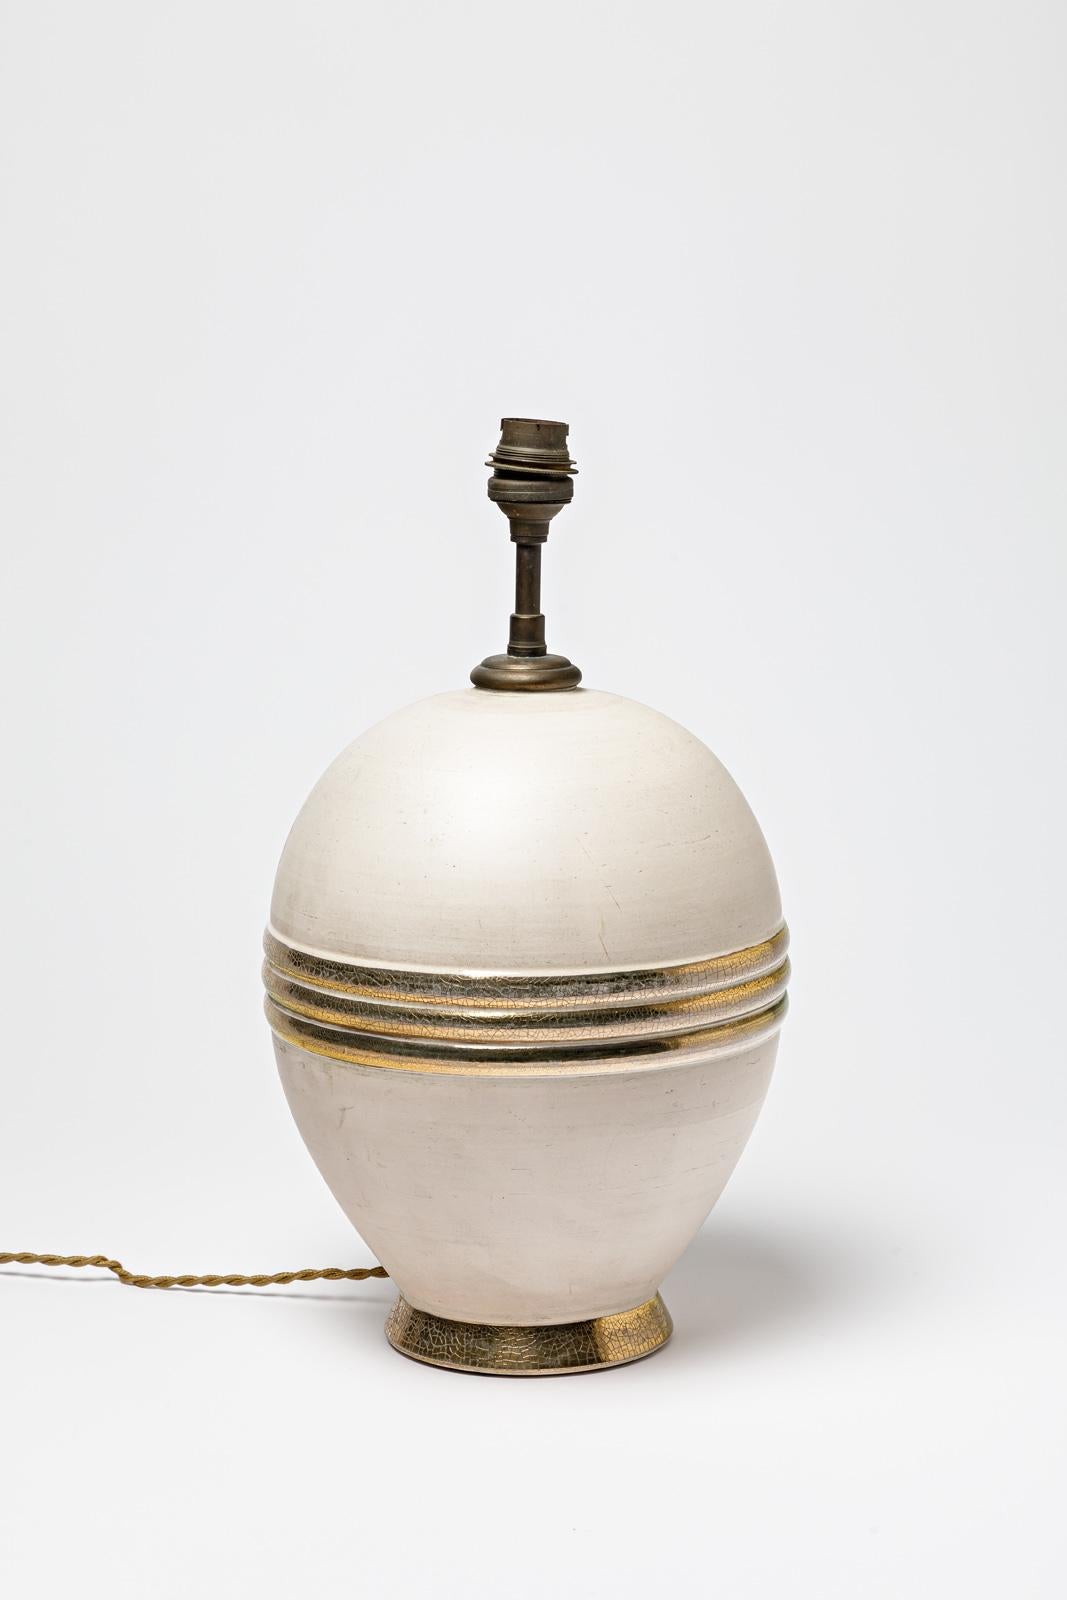 Beige und Gold / Silber glasierte Keramik Tischlampe.
CIRCA 1920-1930.
H : 9,8' x 7,1' Zoll (nur Keramik).
Verkauft mit einem europäischen elektrischen System.